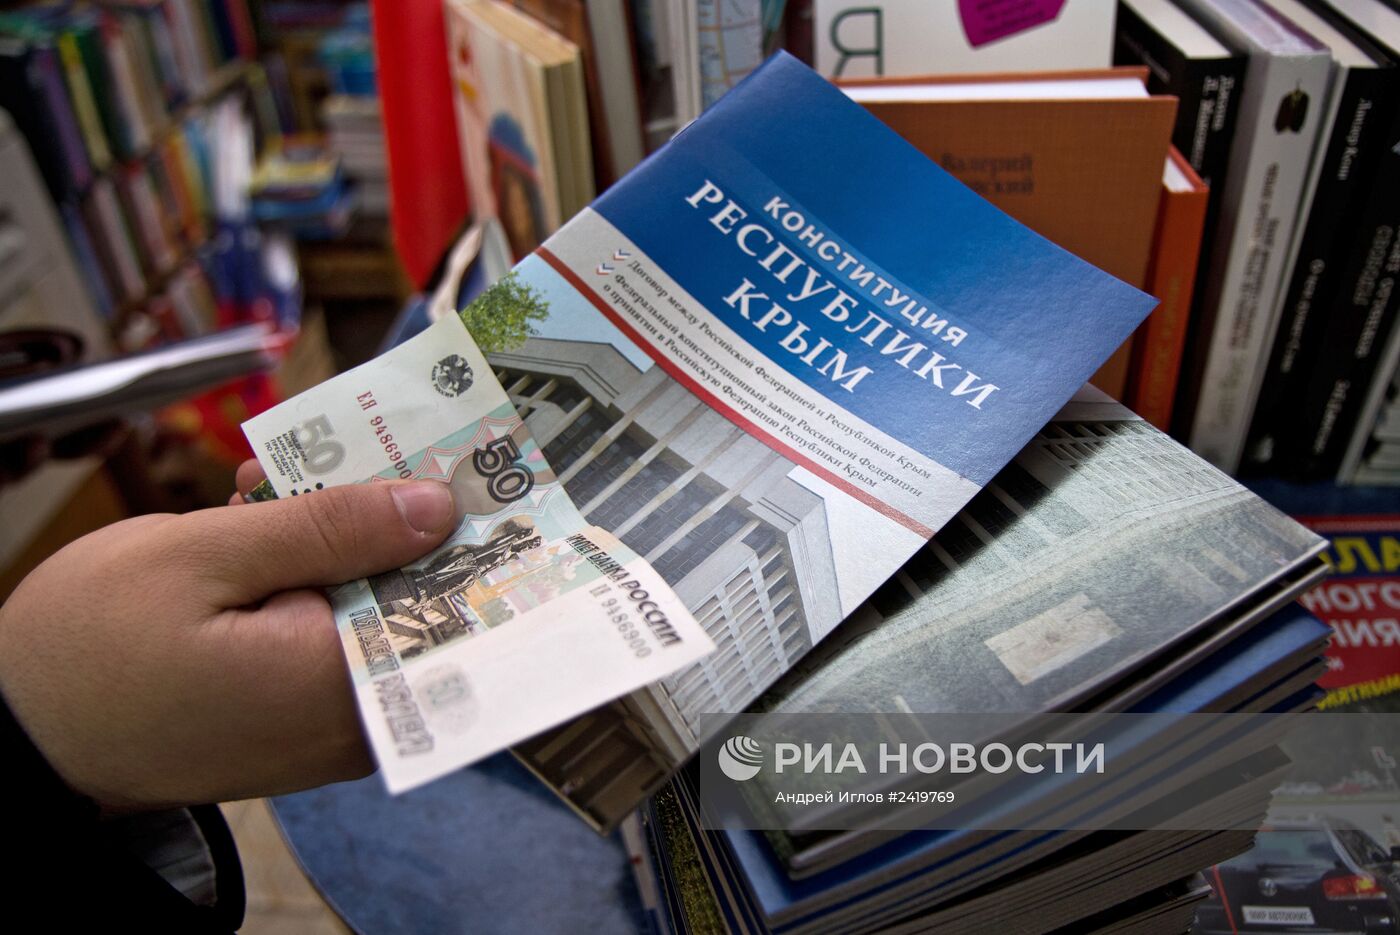 Конституция Республики Крым поступила в продажу на территории полуострова